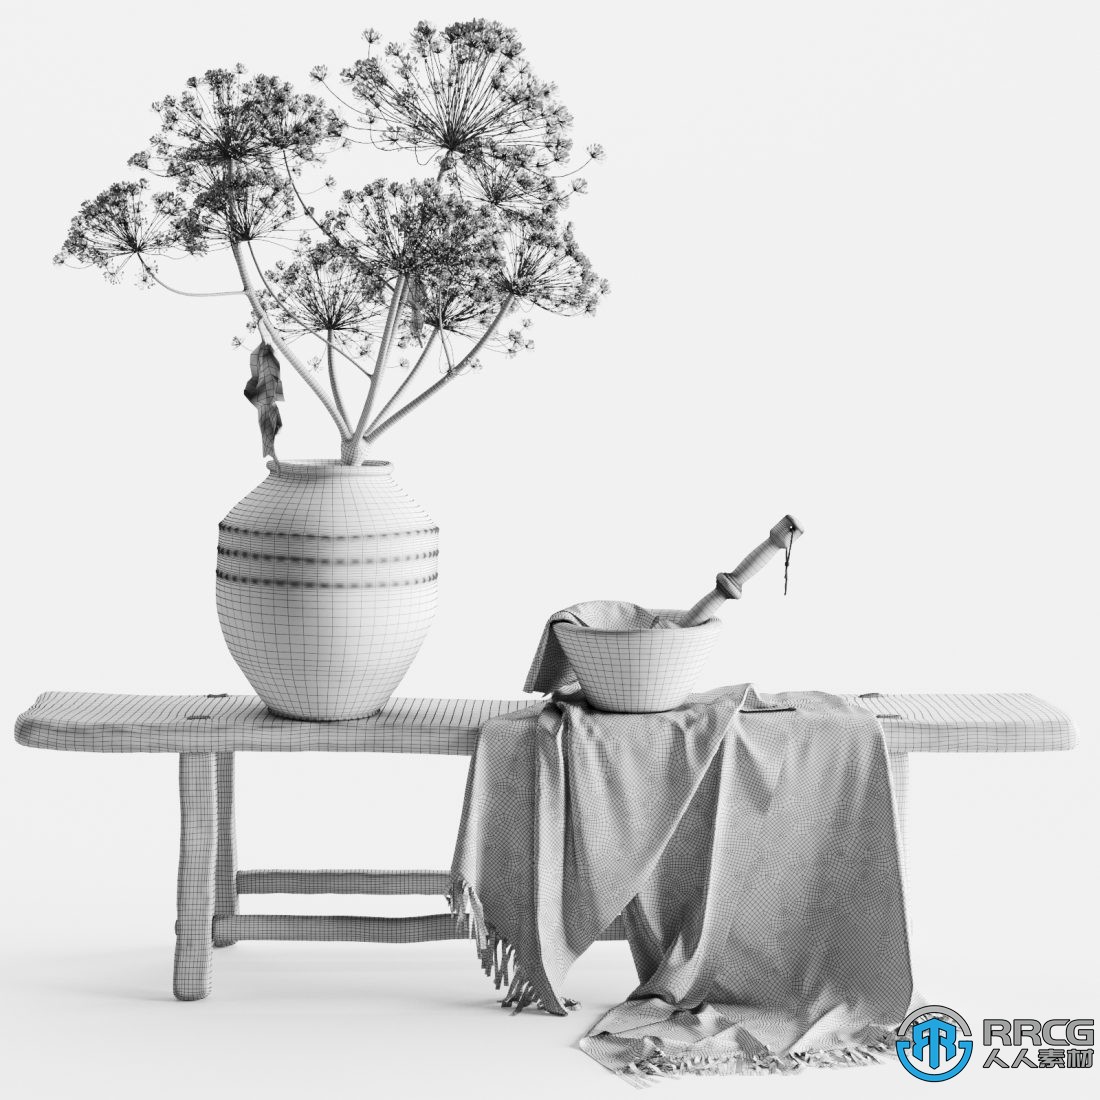 乡村风格装饰品套装长凳花瓶粘土器皿布艺等3D模型